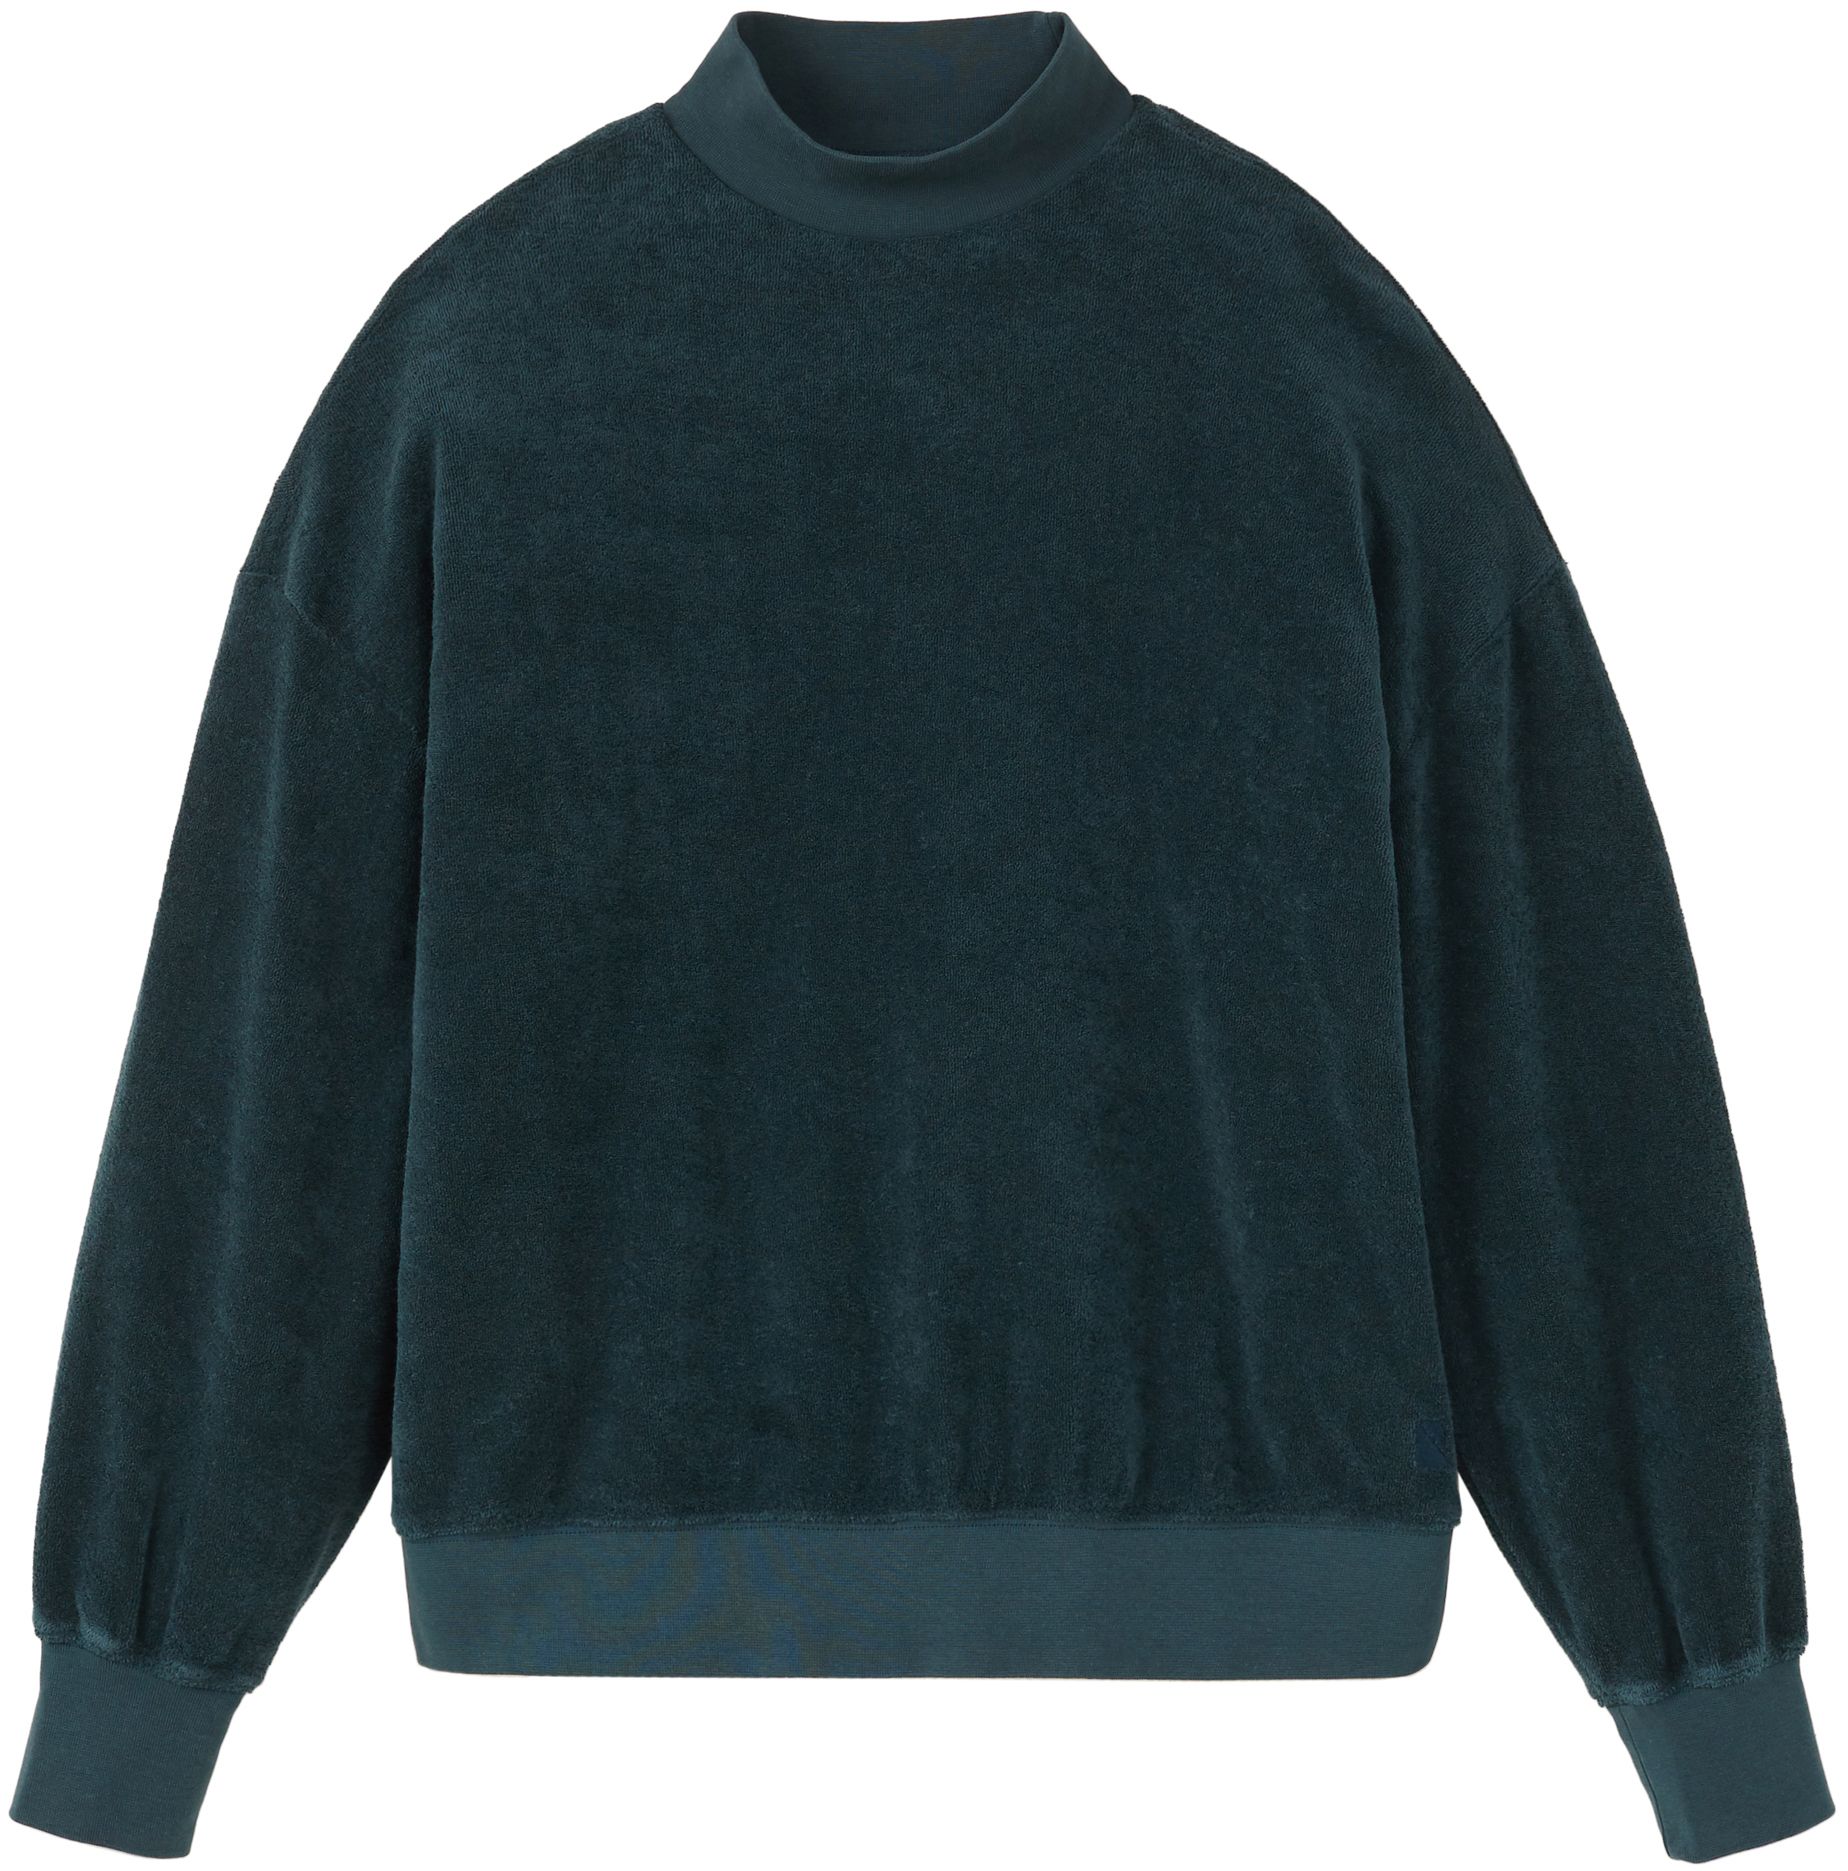 Frottee-Sweatshirt DICHONDRA deep green